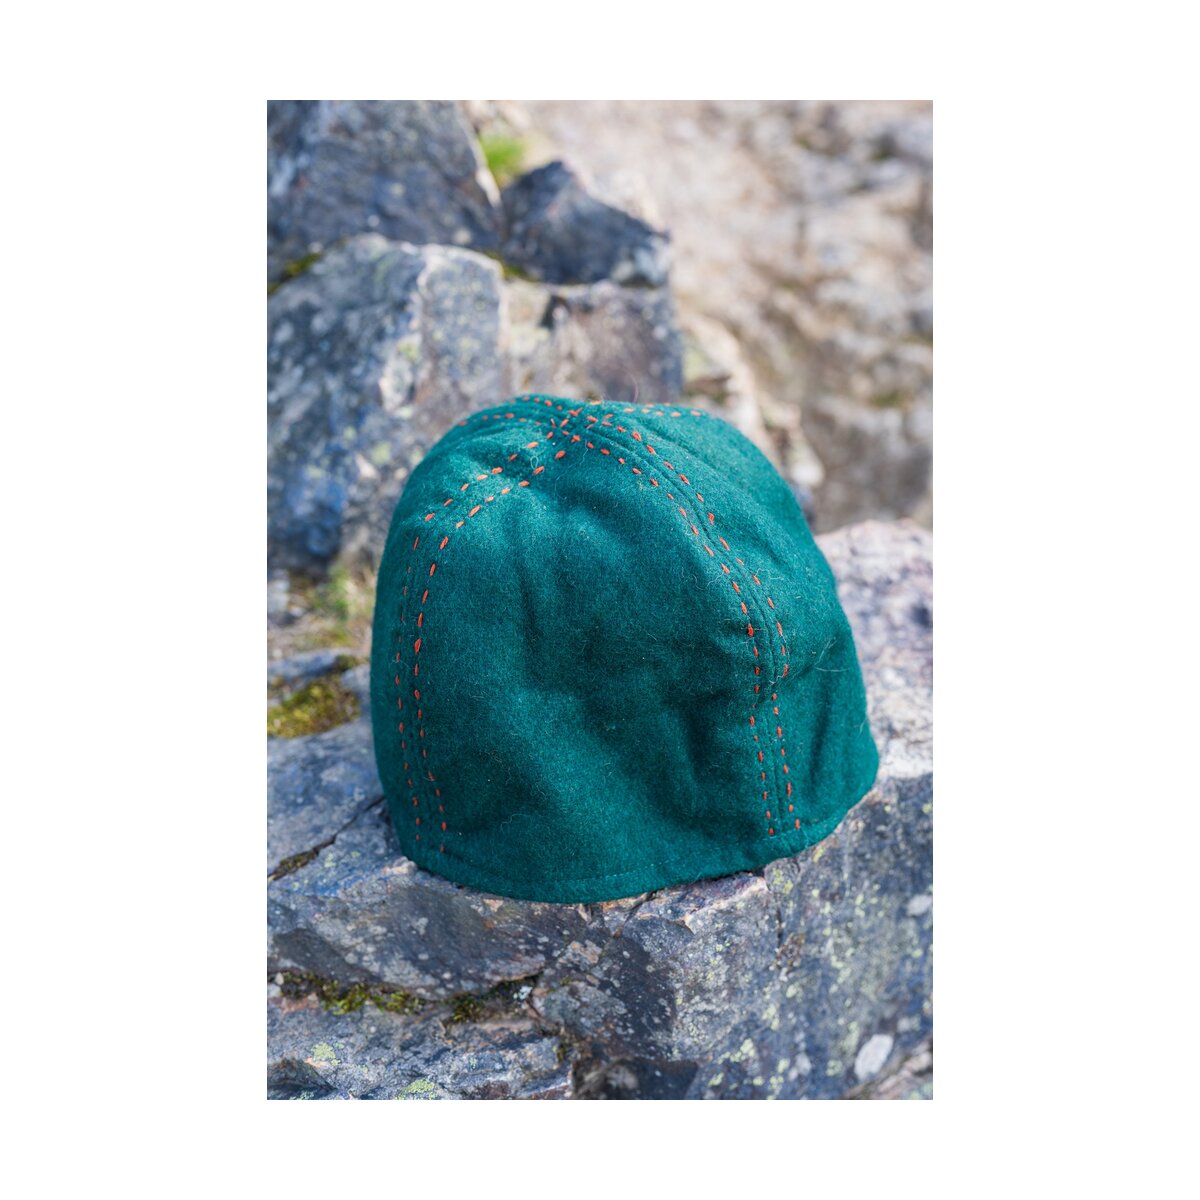 Wikinger Kappe aus Wolle - Grün